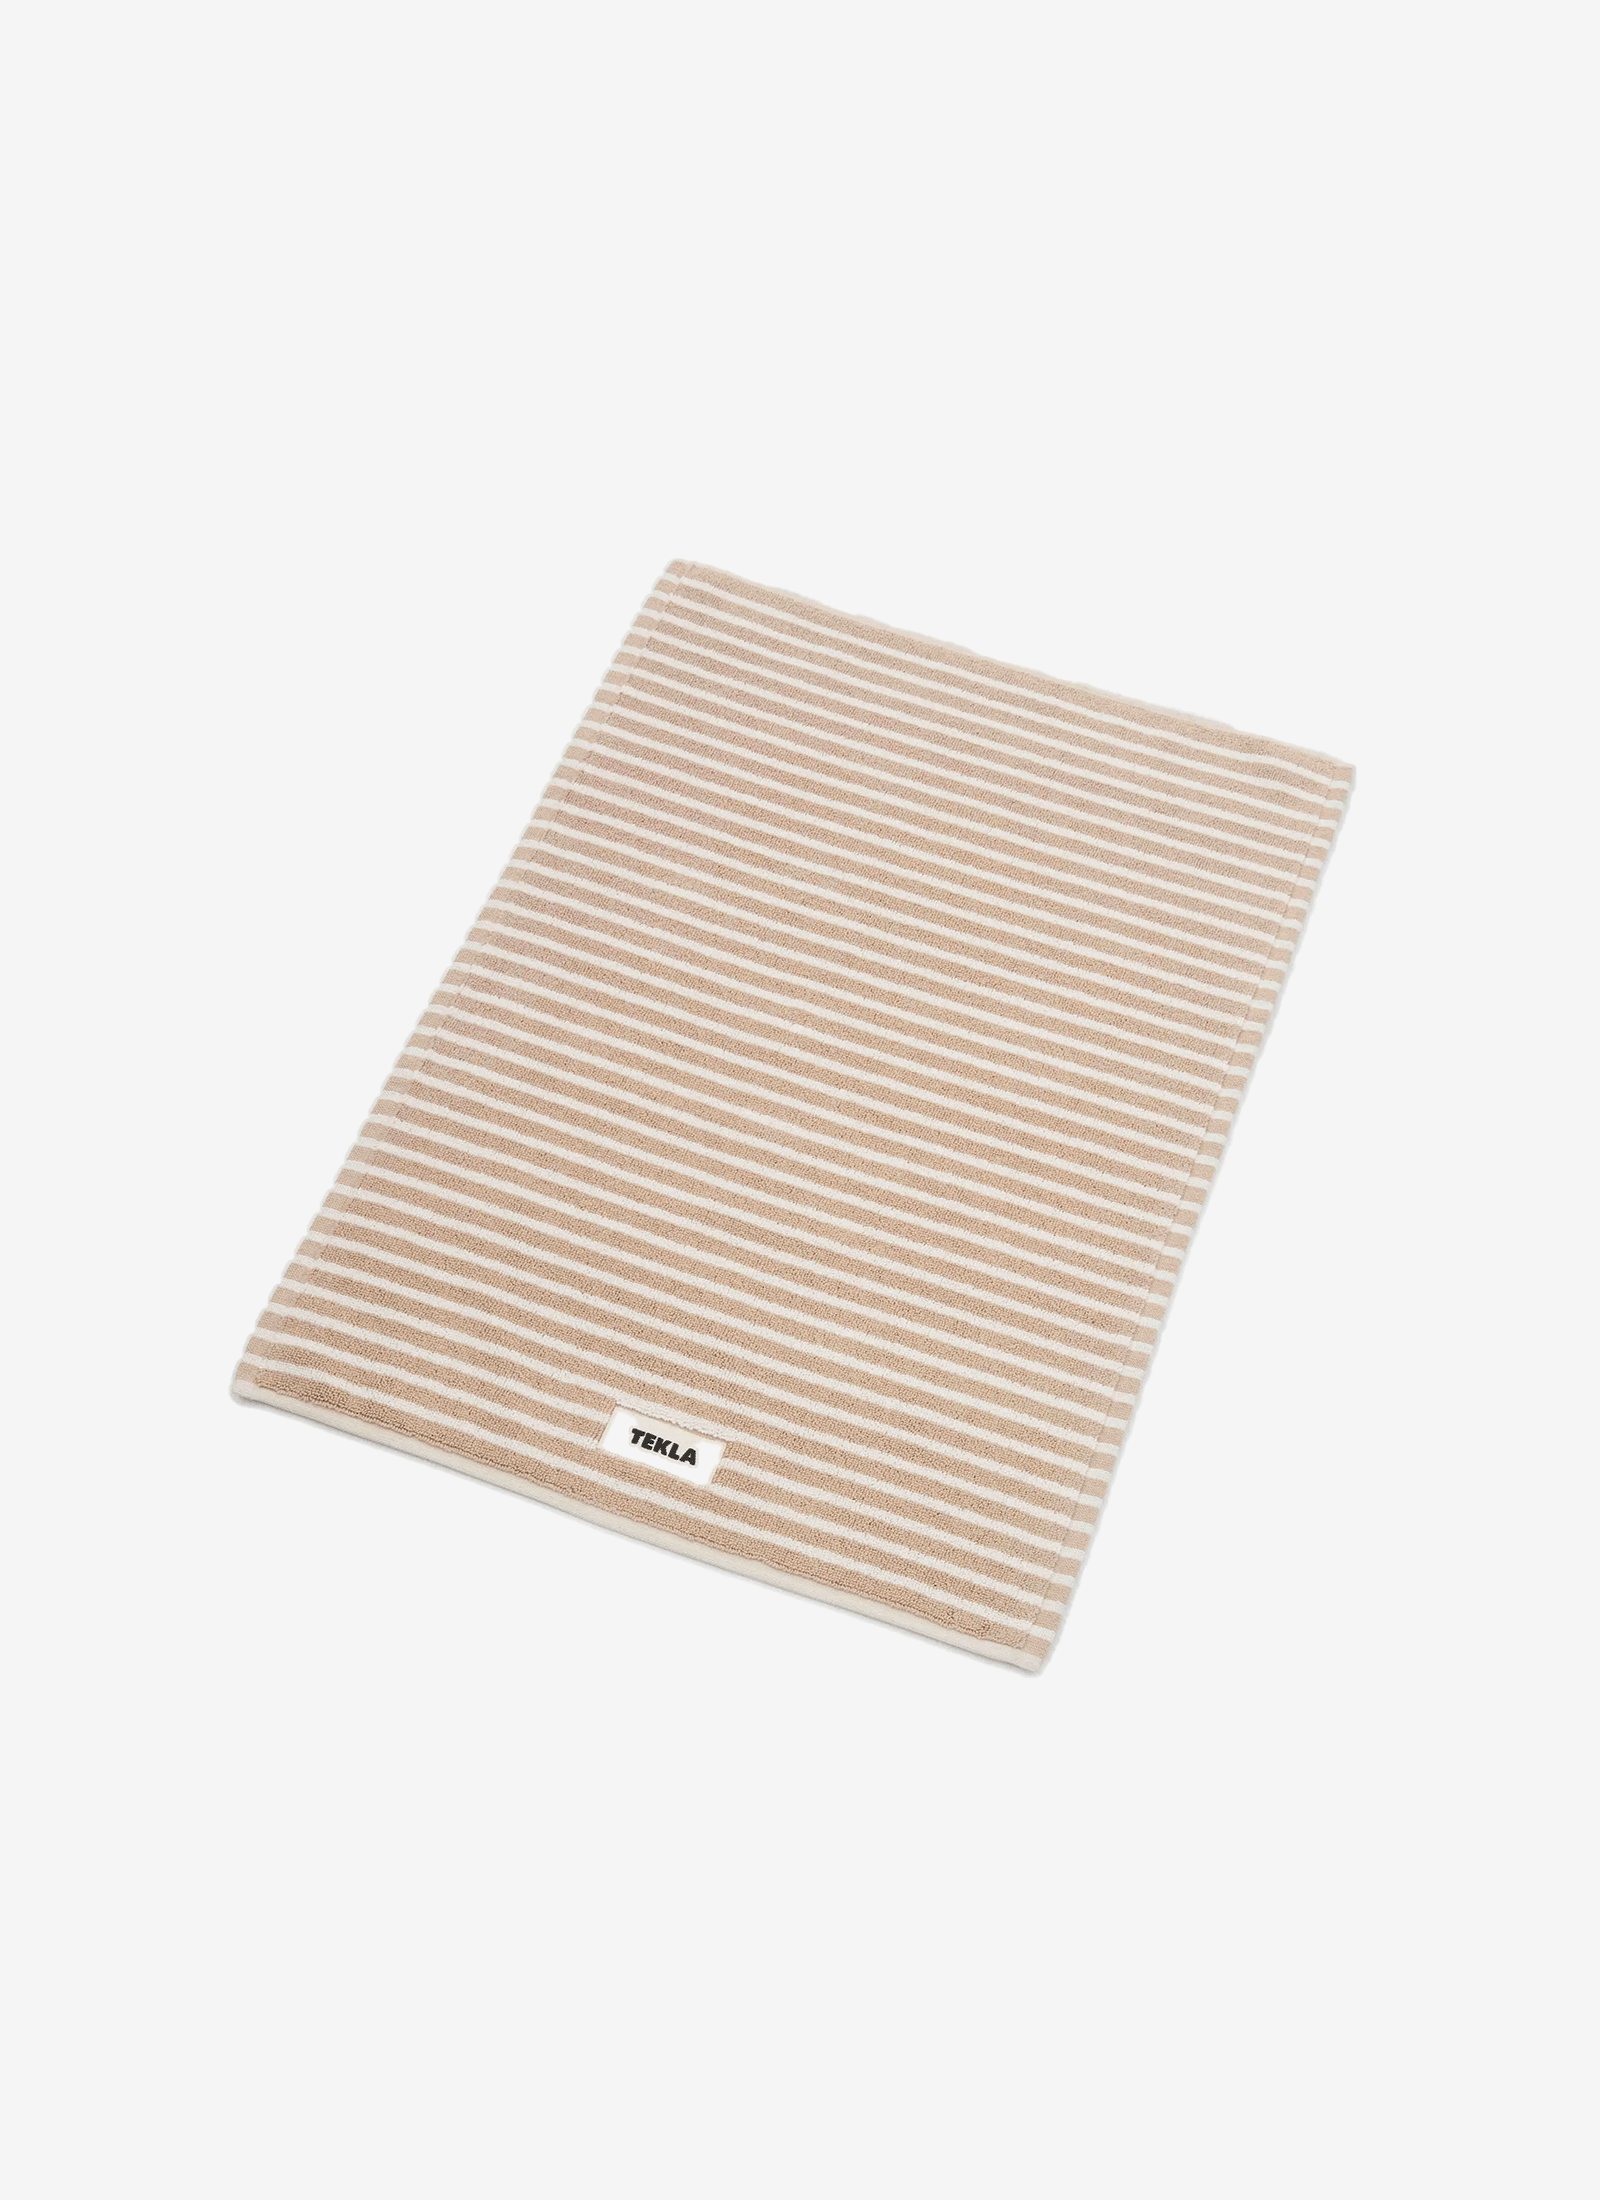 Bathmat - Ivory/Sienna Stripes